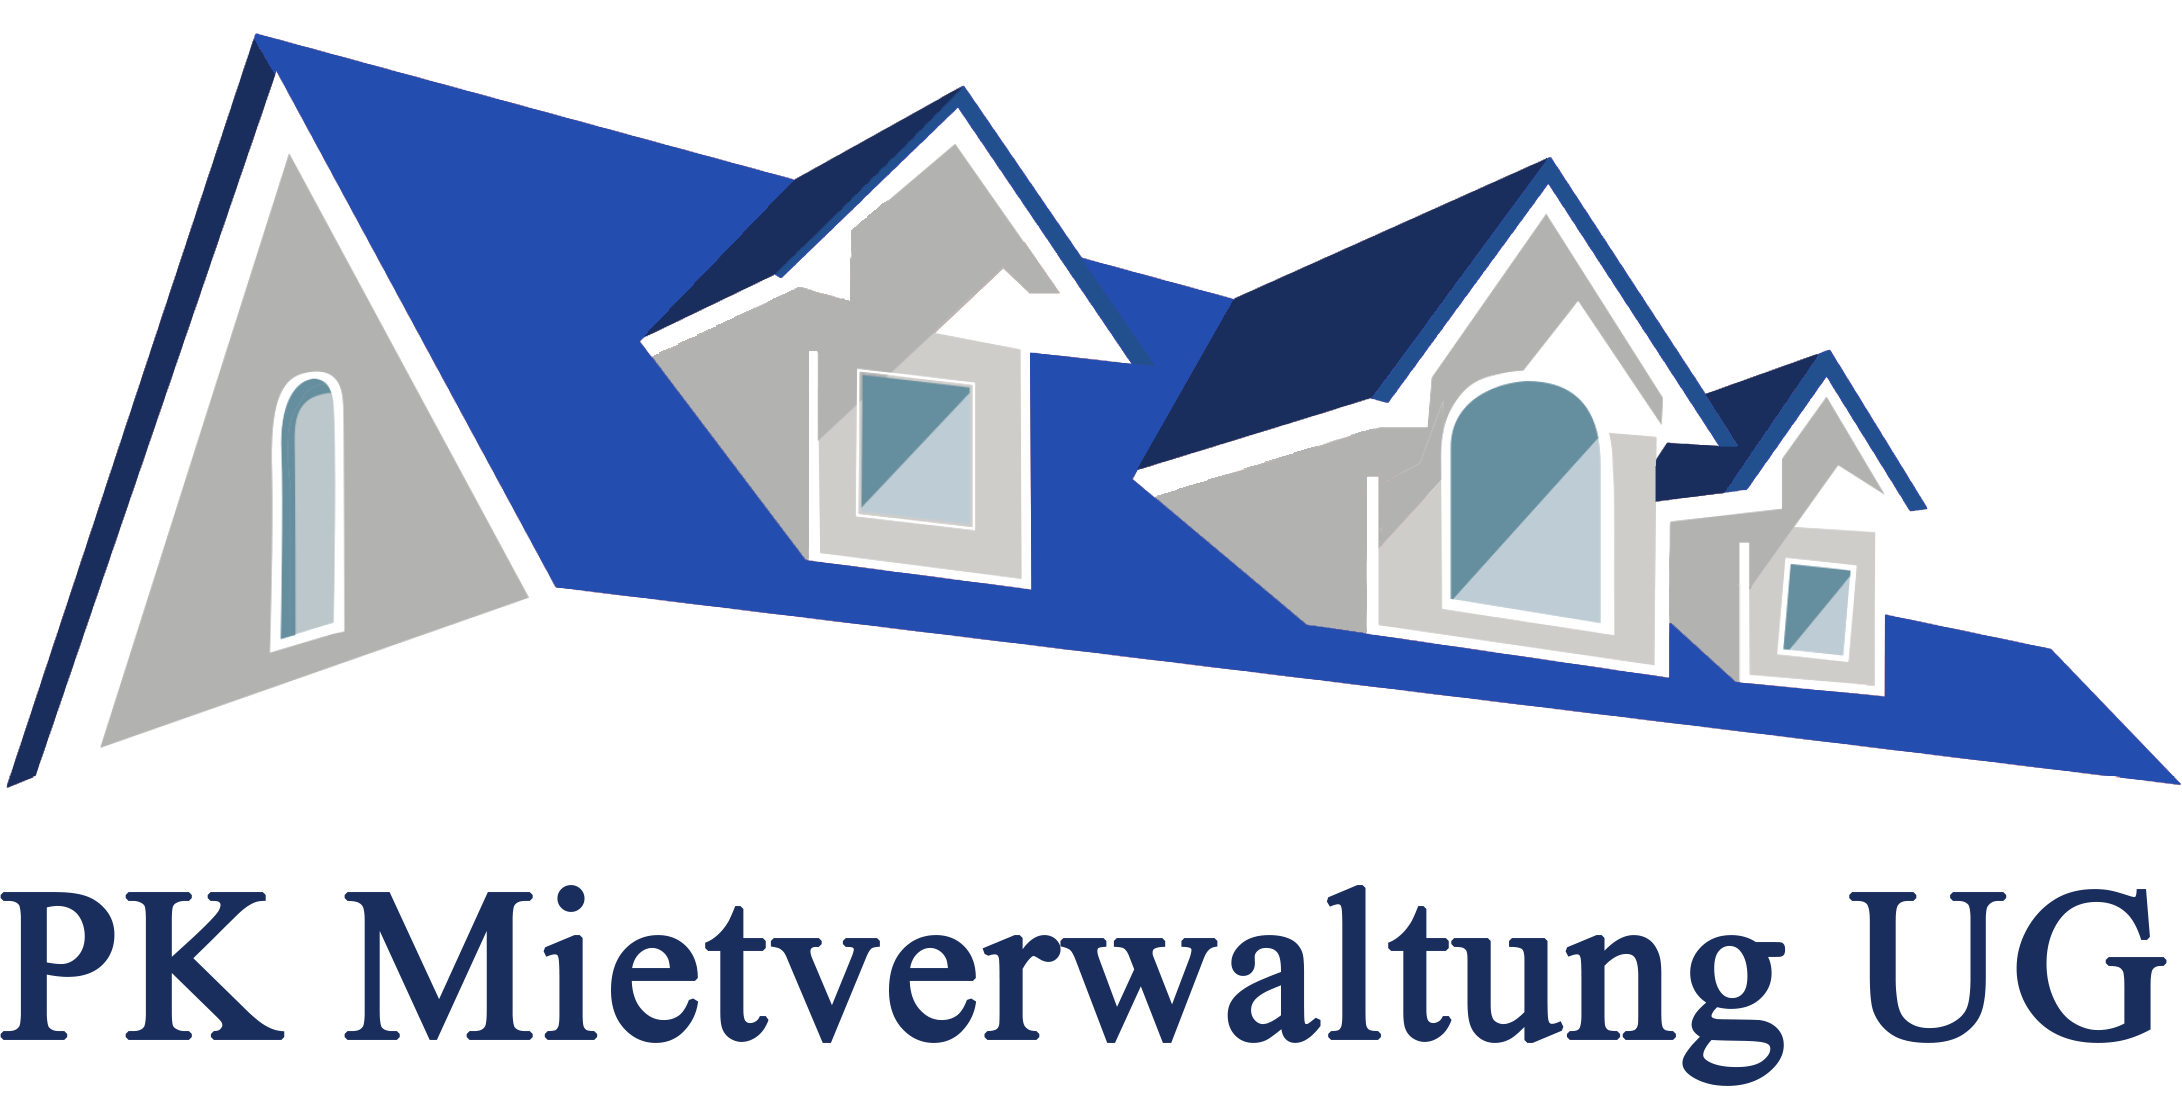 Logo PK Mietverwaltung UG, blaues Dach mit Unternehmensname